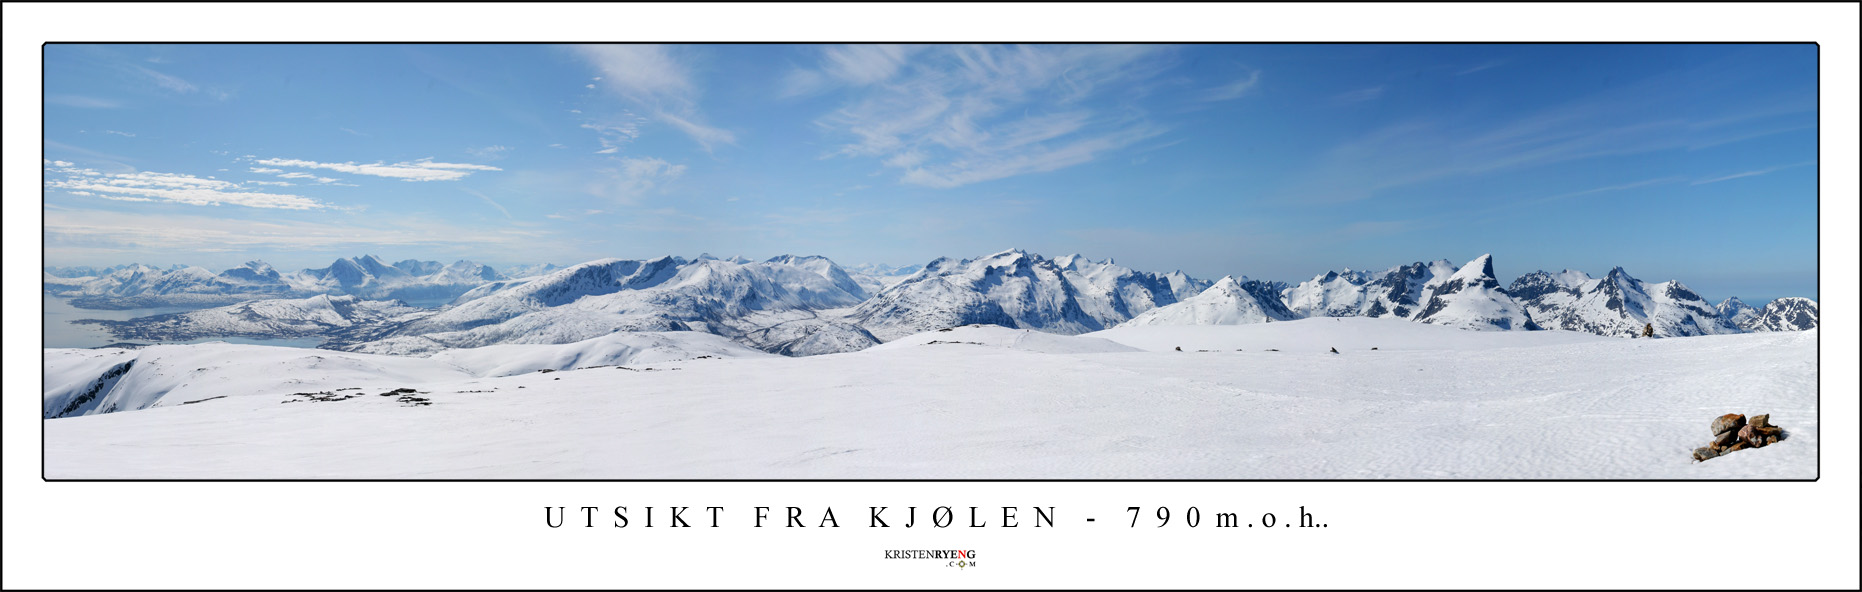 PanoramaFraKjolen.jpg - Utsikt fra Store Kjølen (790 moh) på Kvaløya. Ute til høyre ses Kvaløyas høyeste fjell, Store Blåmann med sin "trekantform" i toppen.